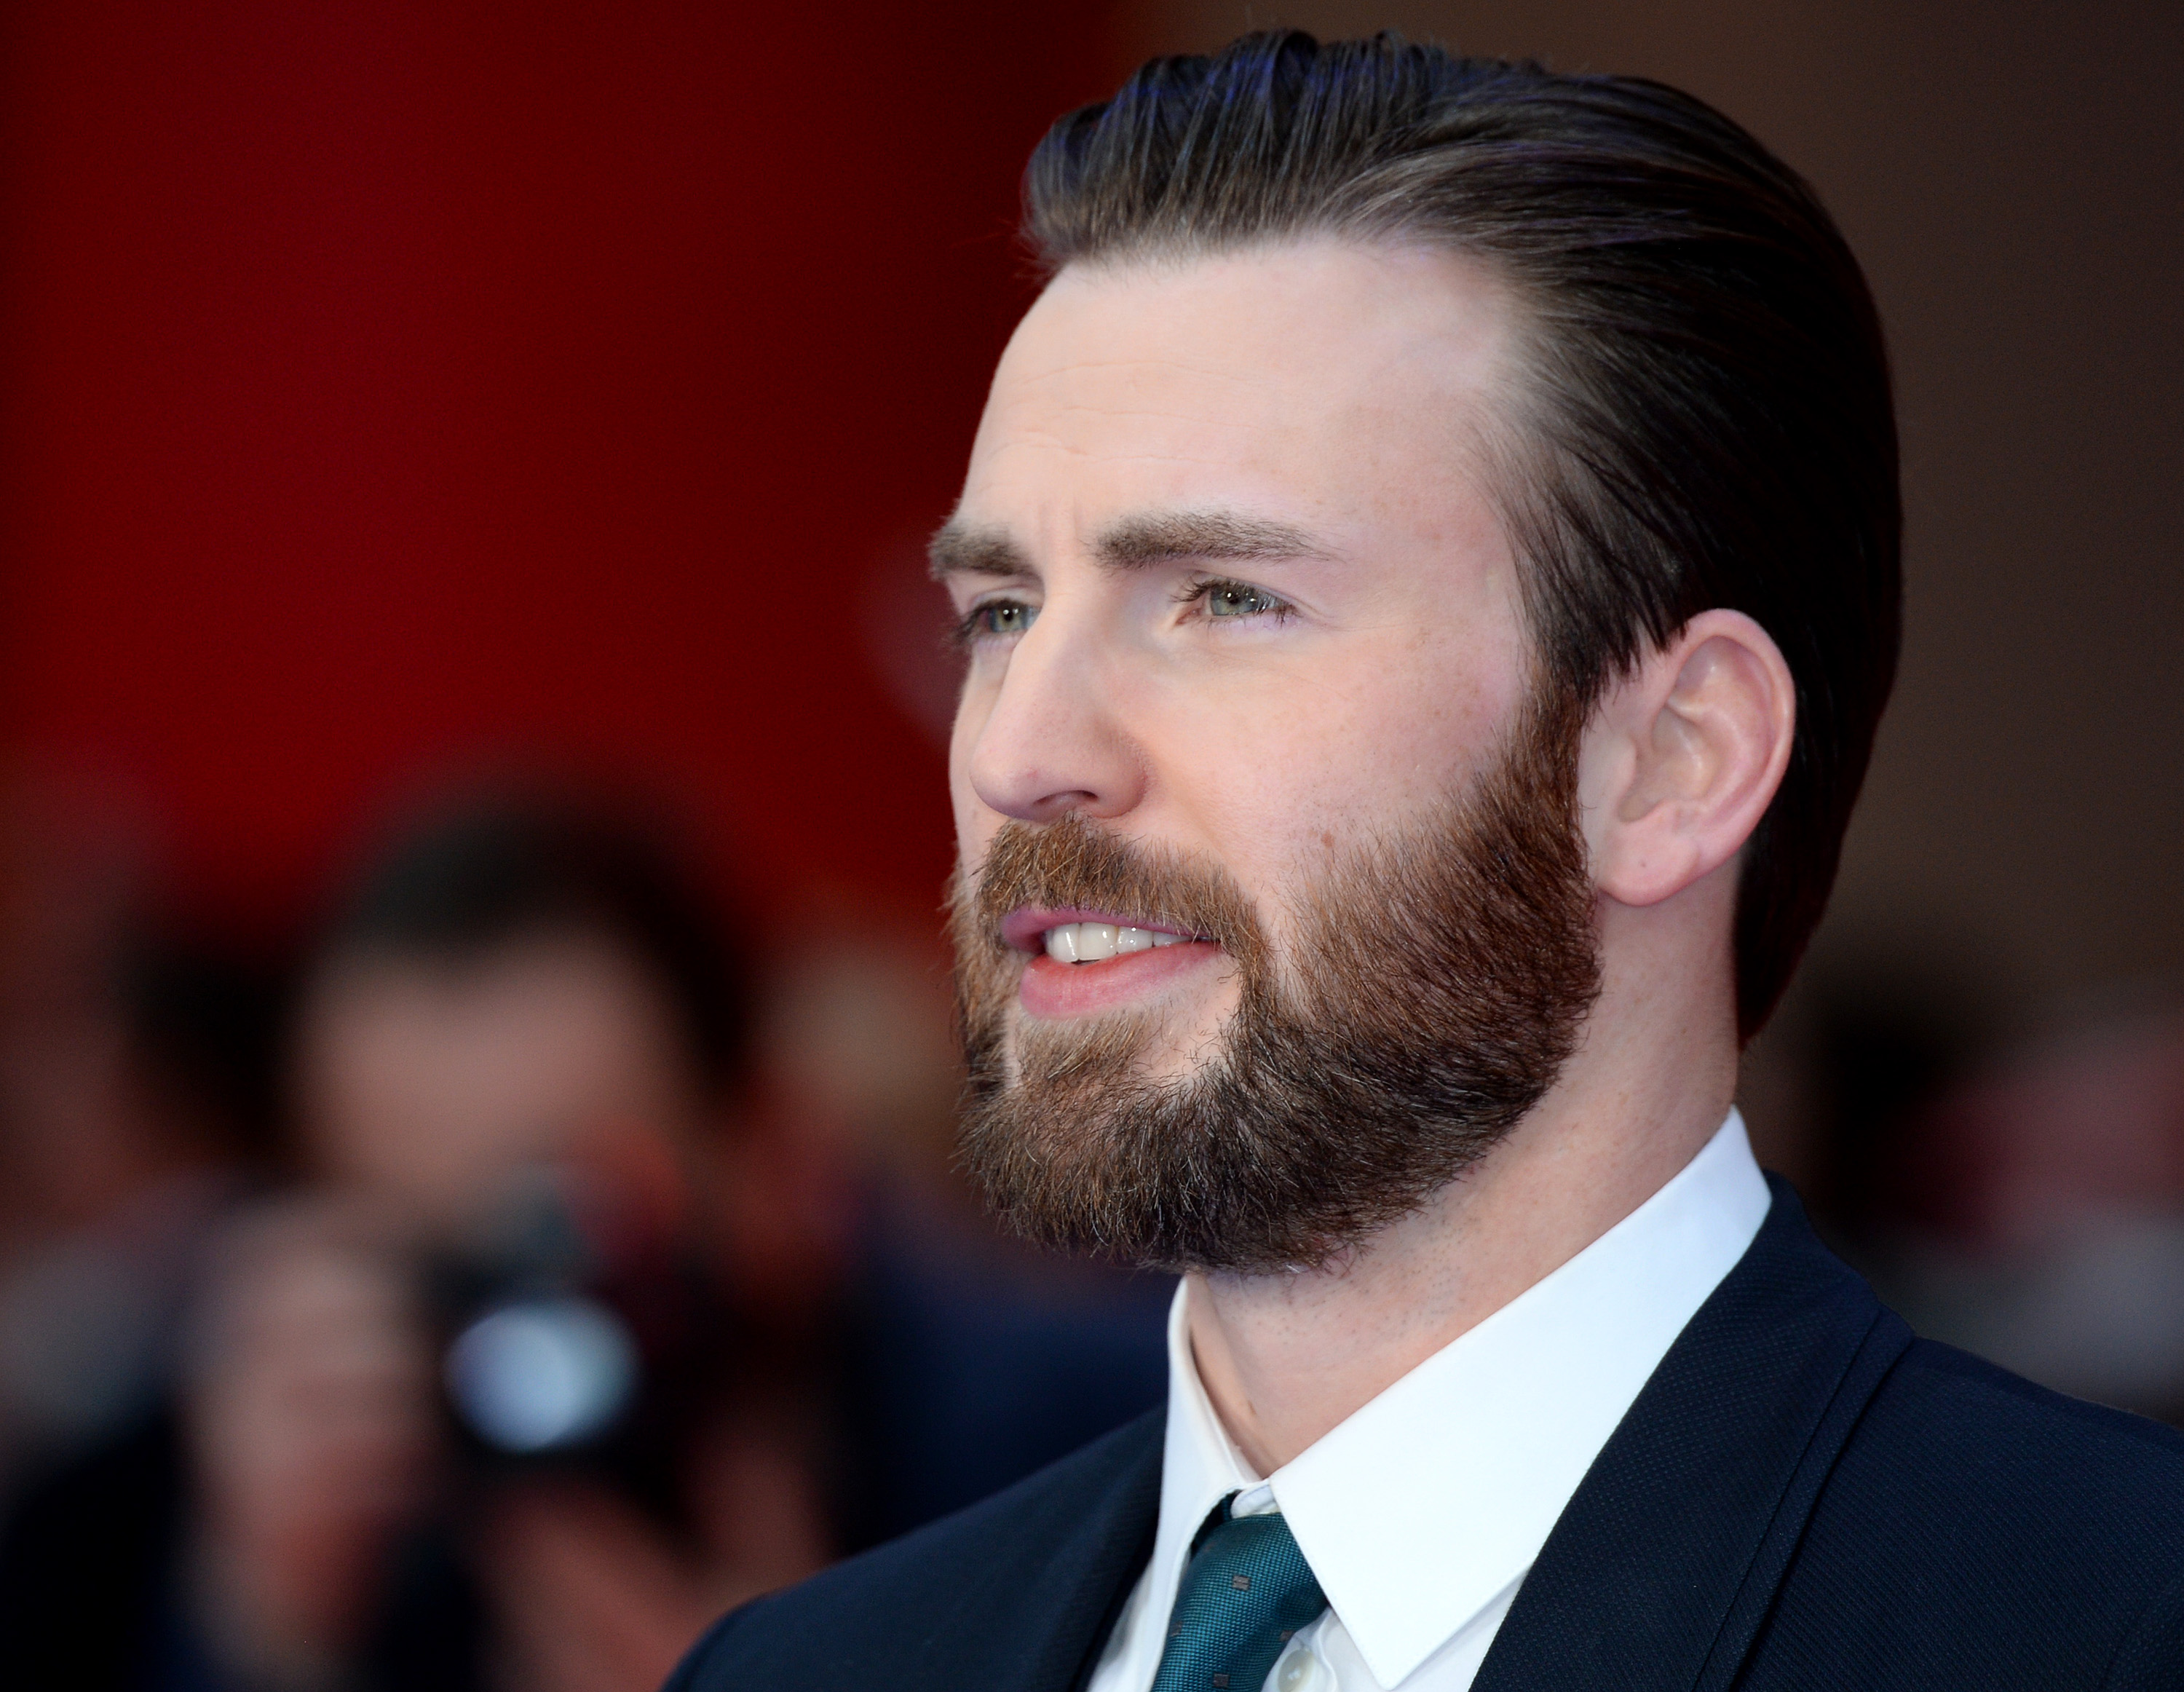 Chris Evans attends the European premiere of 'Captain America: Civil War'